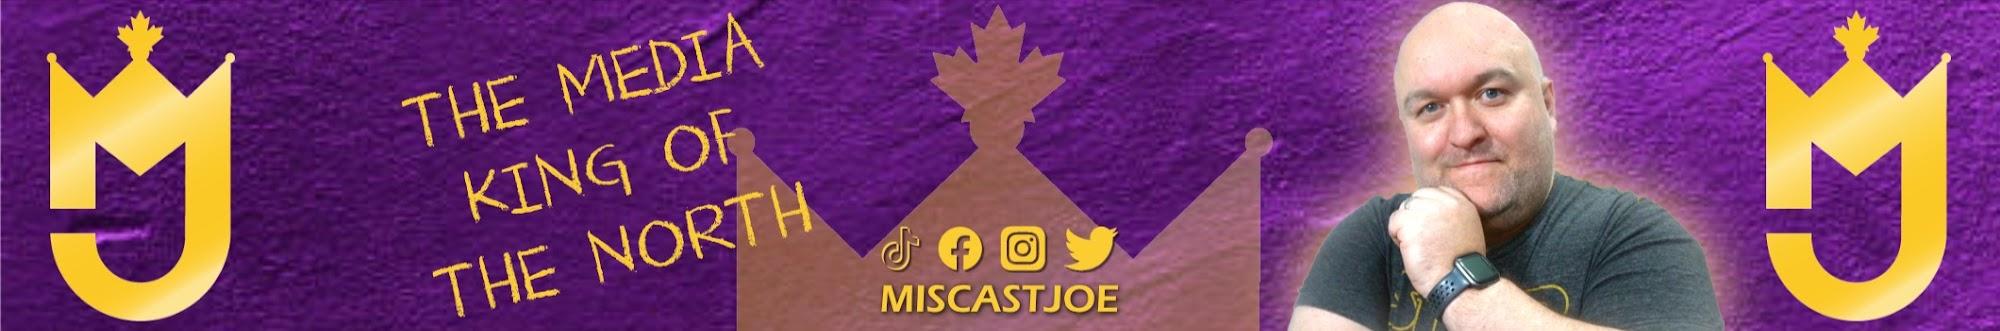 MiscastJoe